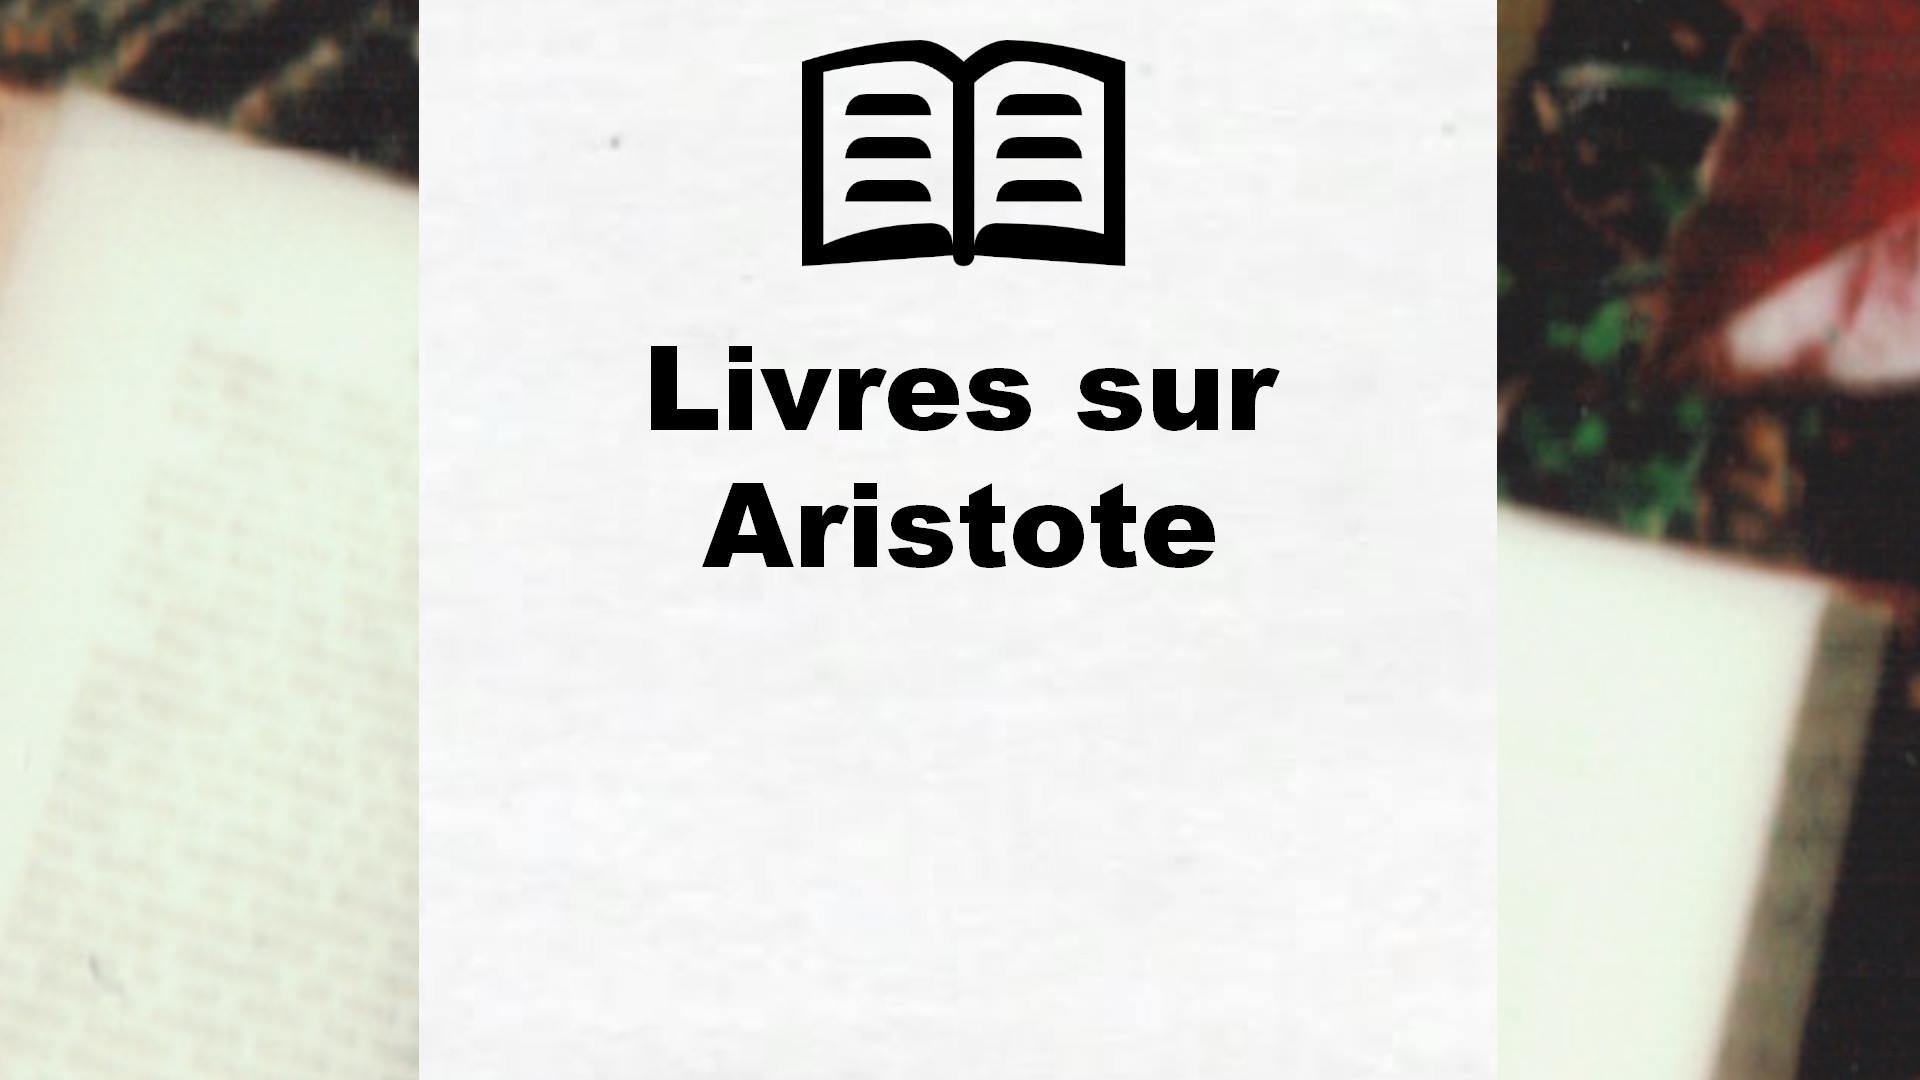 Livres sur Aristote